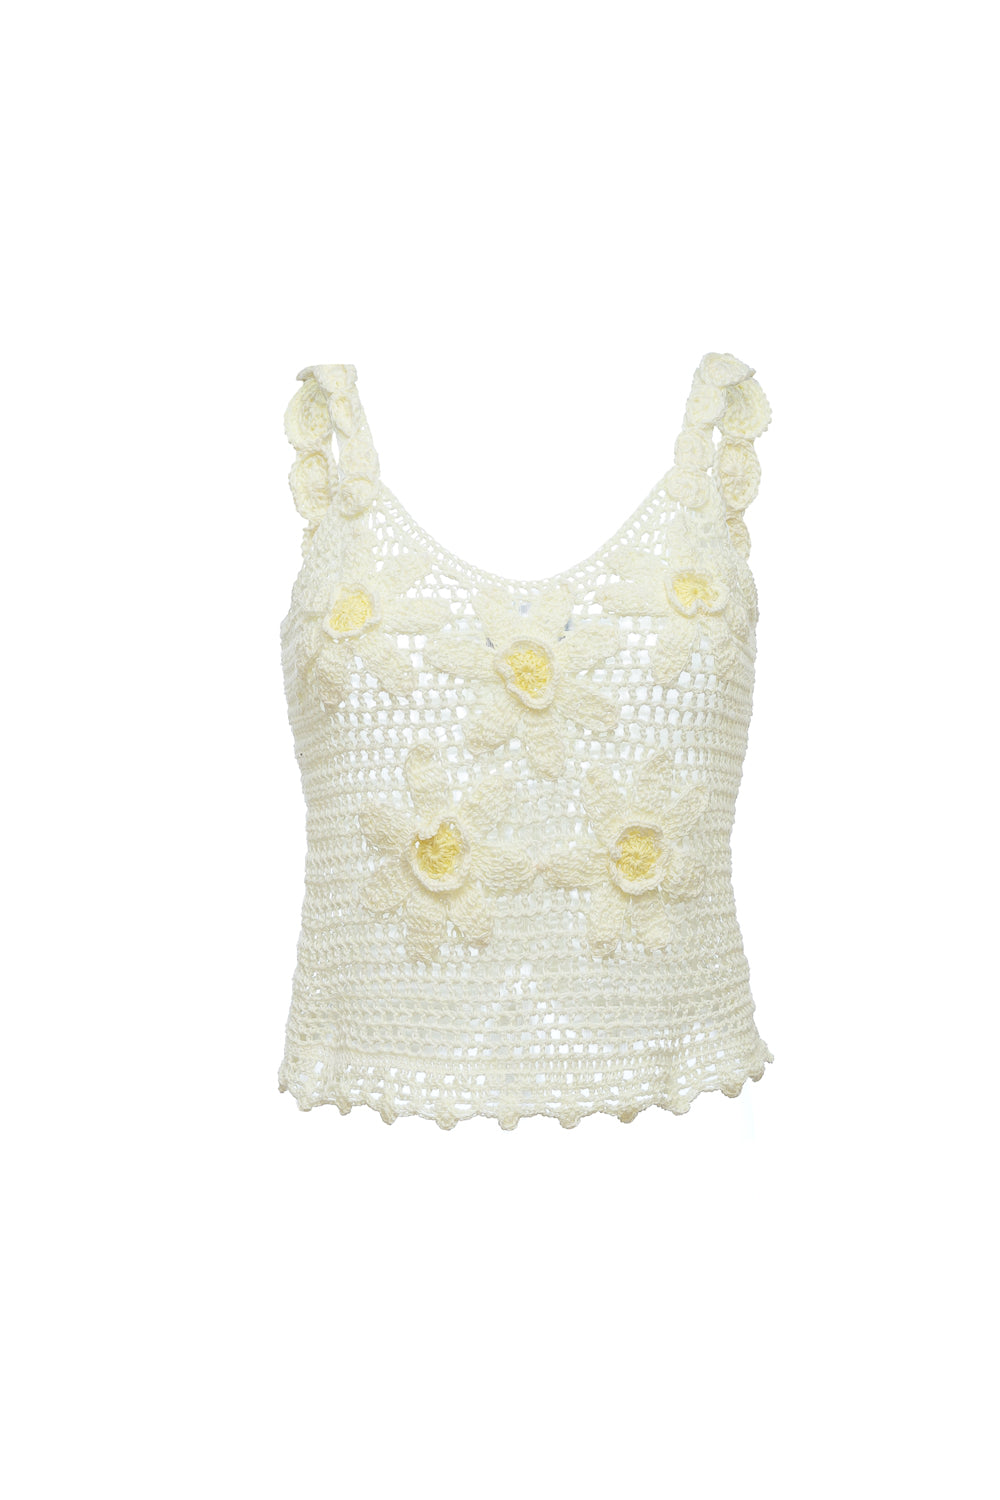 Shop Andreeva Women's White Handmade Crochet Top